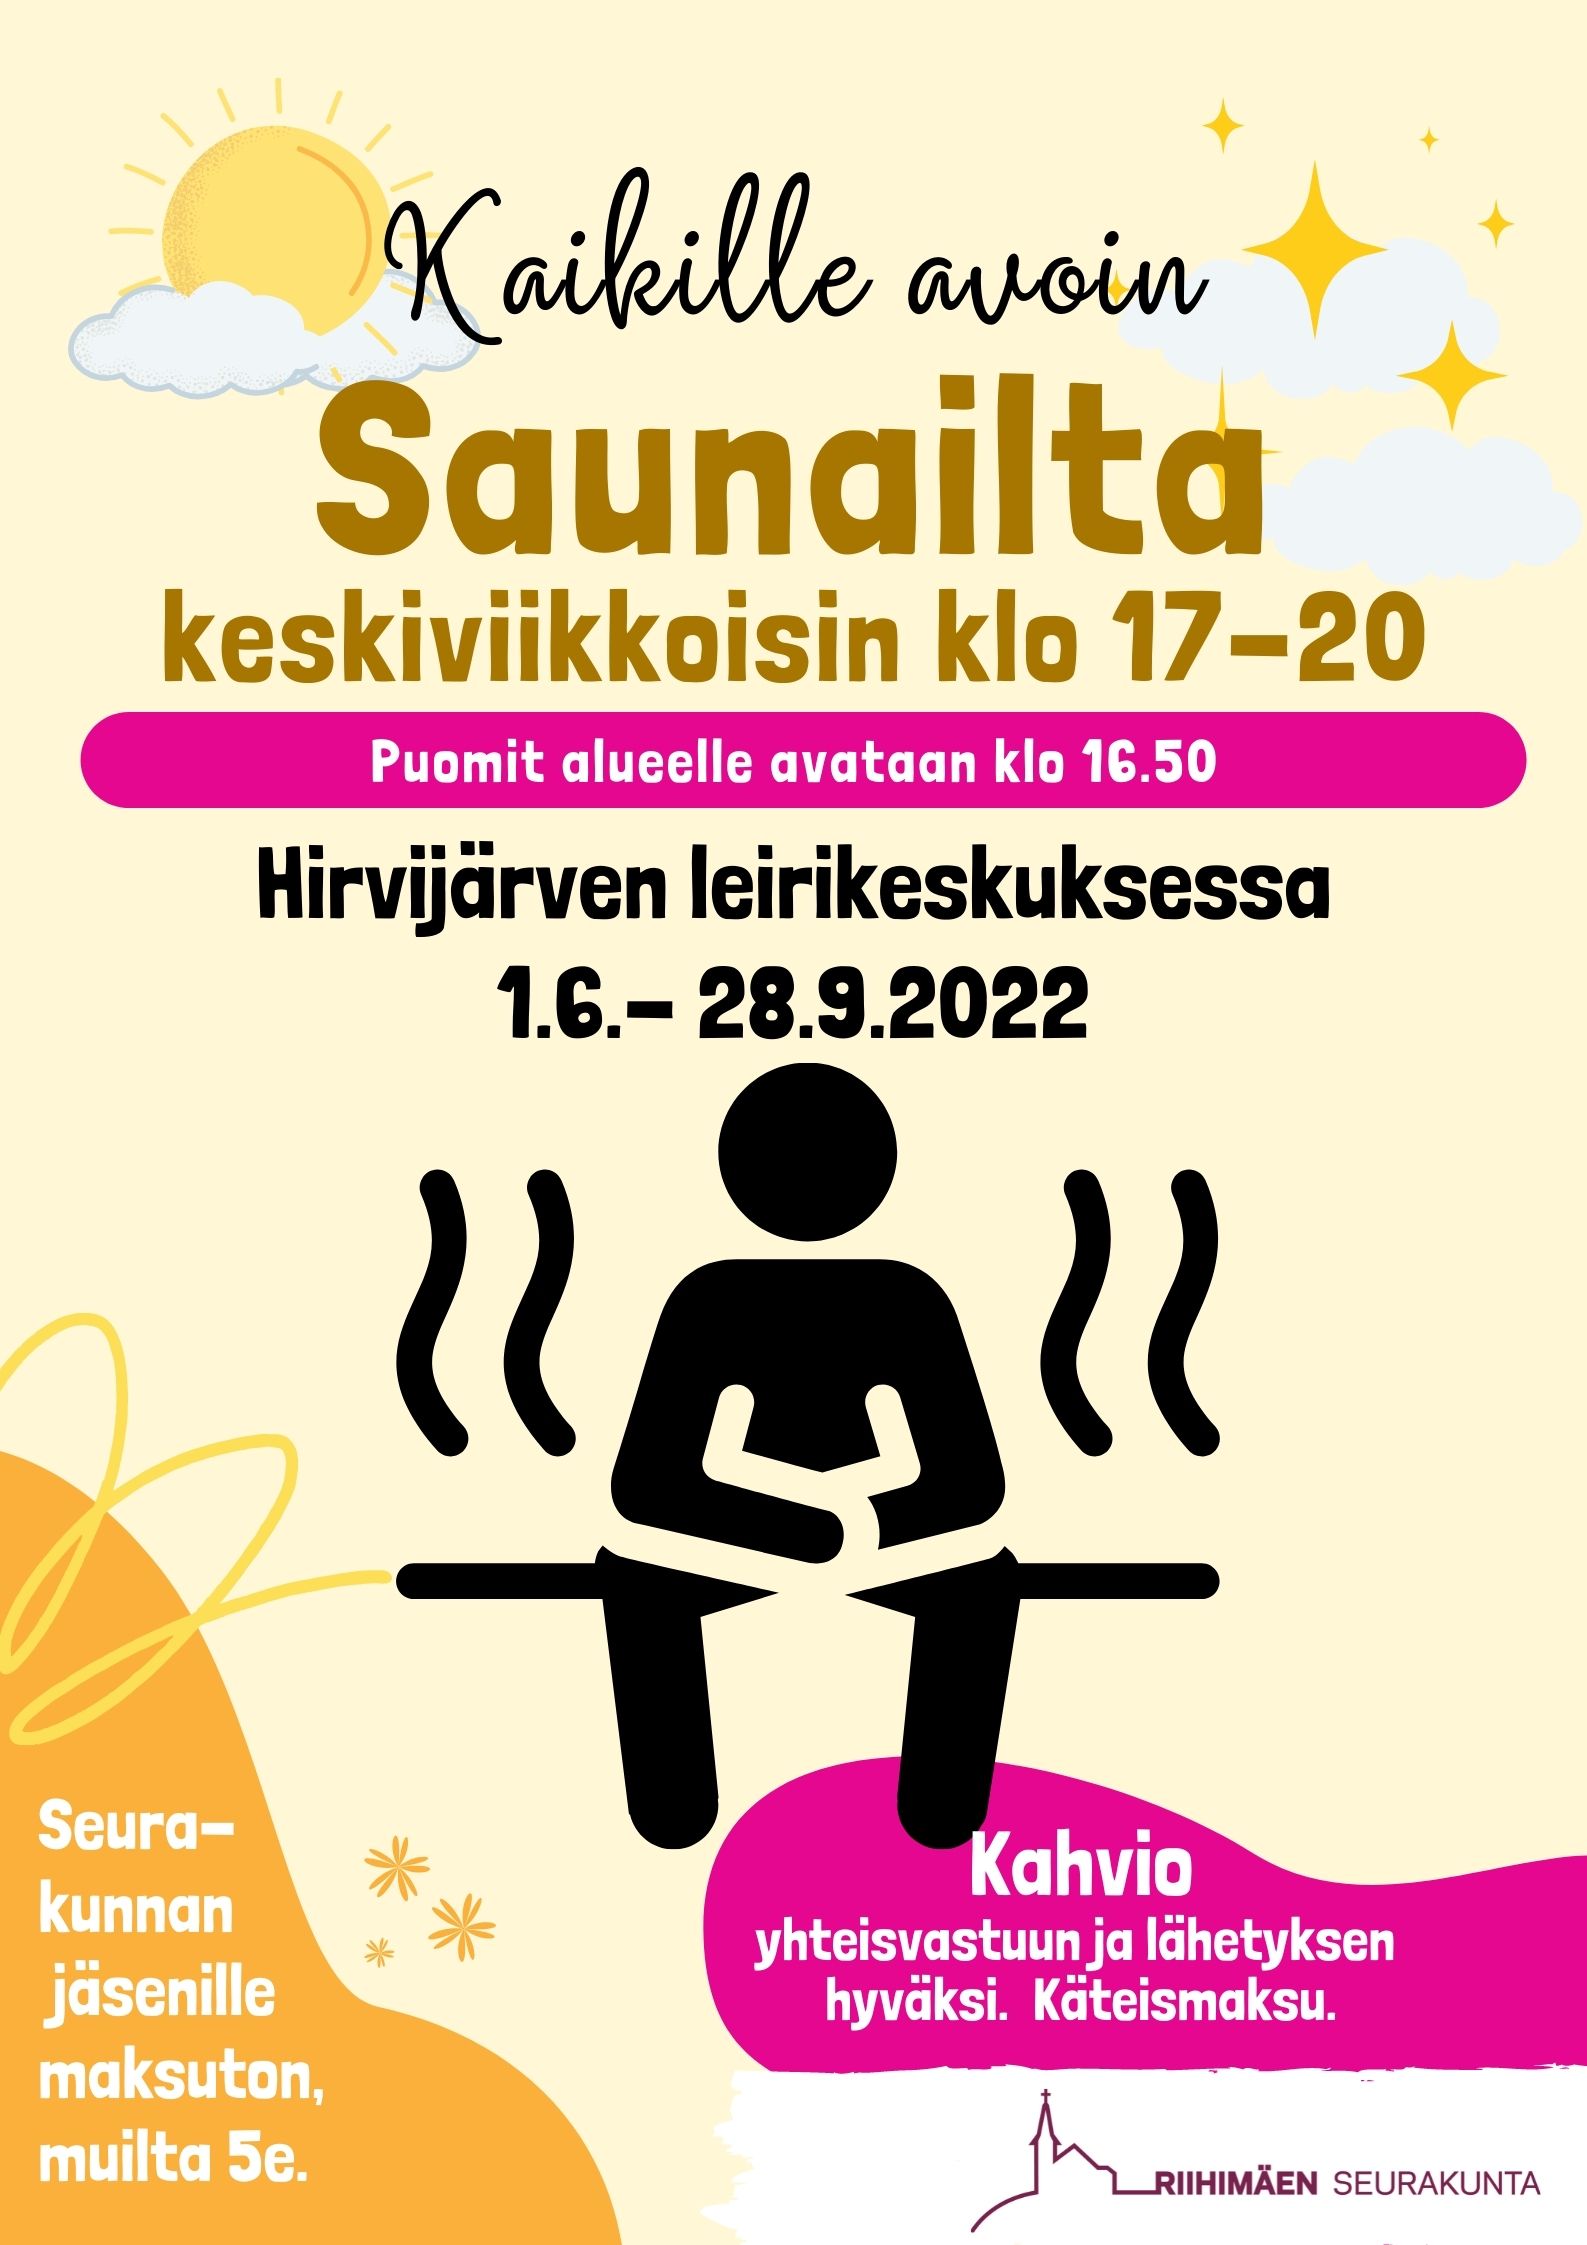 Kaikille avoin saunailta keskiviikkoisin klo 17-20 Hirvijärven leirikeskuksessa 1.6. - 28.9.2022. Seurakunnan jäsenille maksuton, muilta 5 €. Kahvio yhteisvastuun ja lähetyksen hyväksi. Käteismaksu.